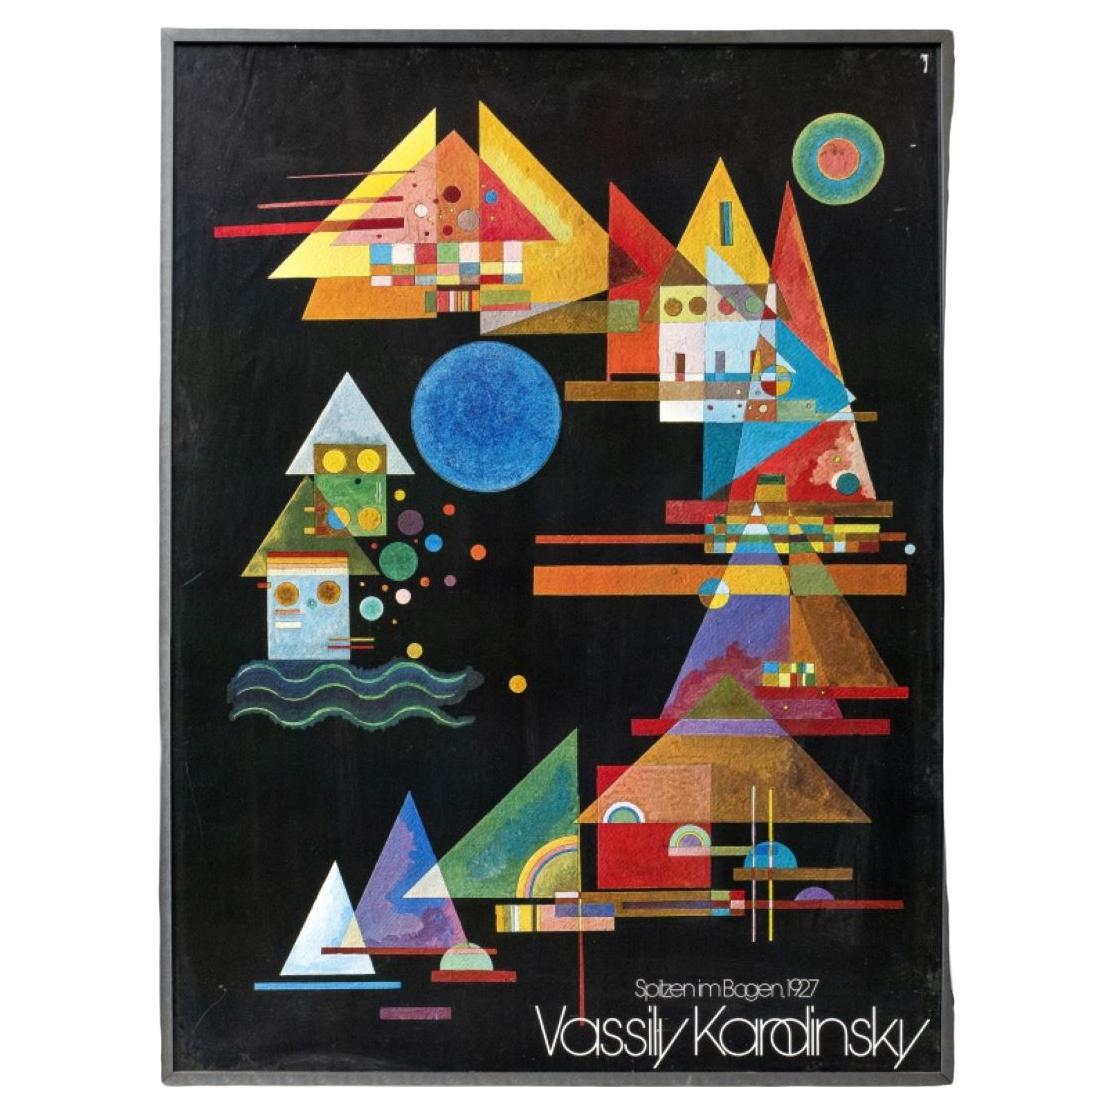 Vassily Kandinsky Framed Poster For Sale